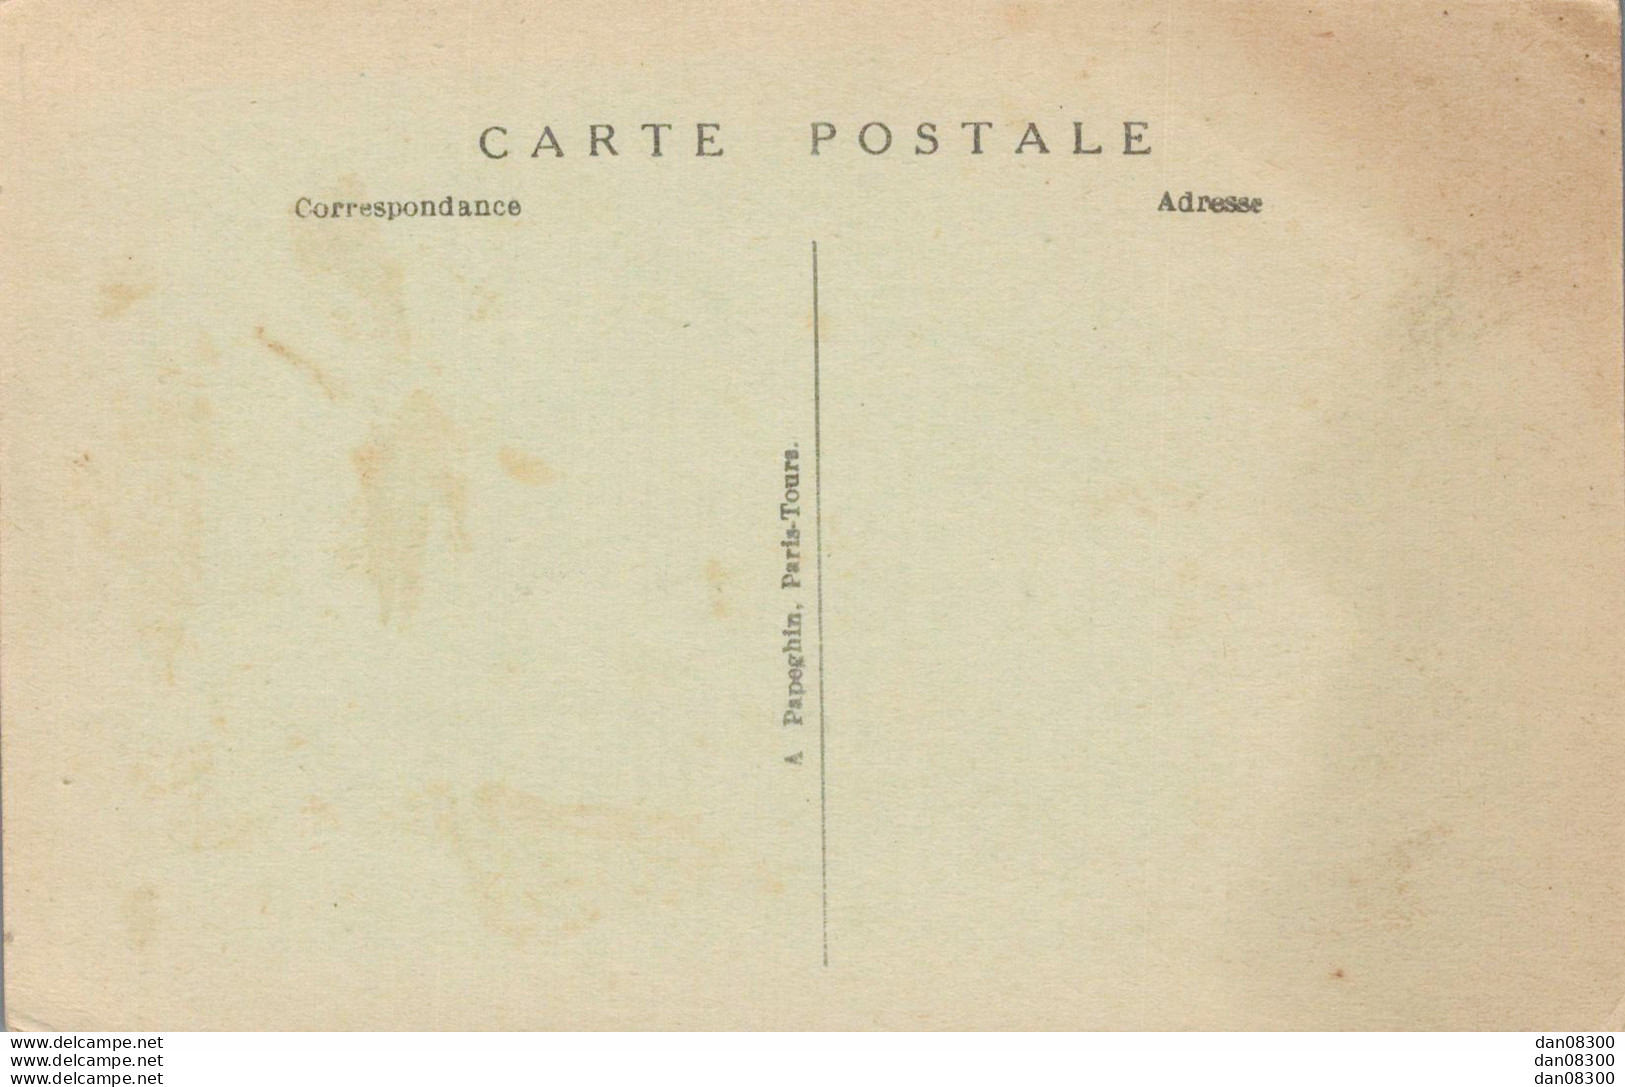 75 EXPOSITION DES ARTS DECORATIFS PARIS 1925 LA FOULE DEVANT LE PAVILLON POMONE - Mostre